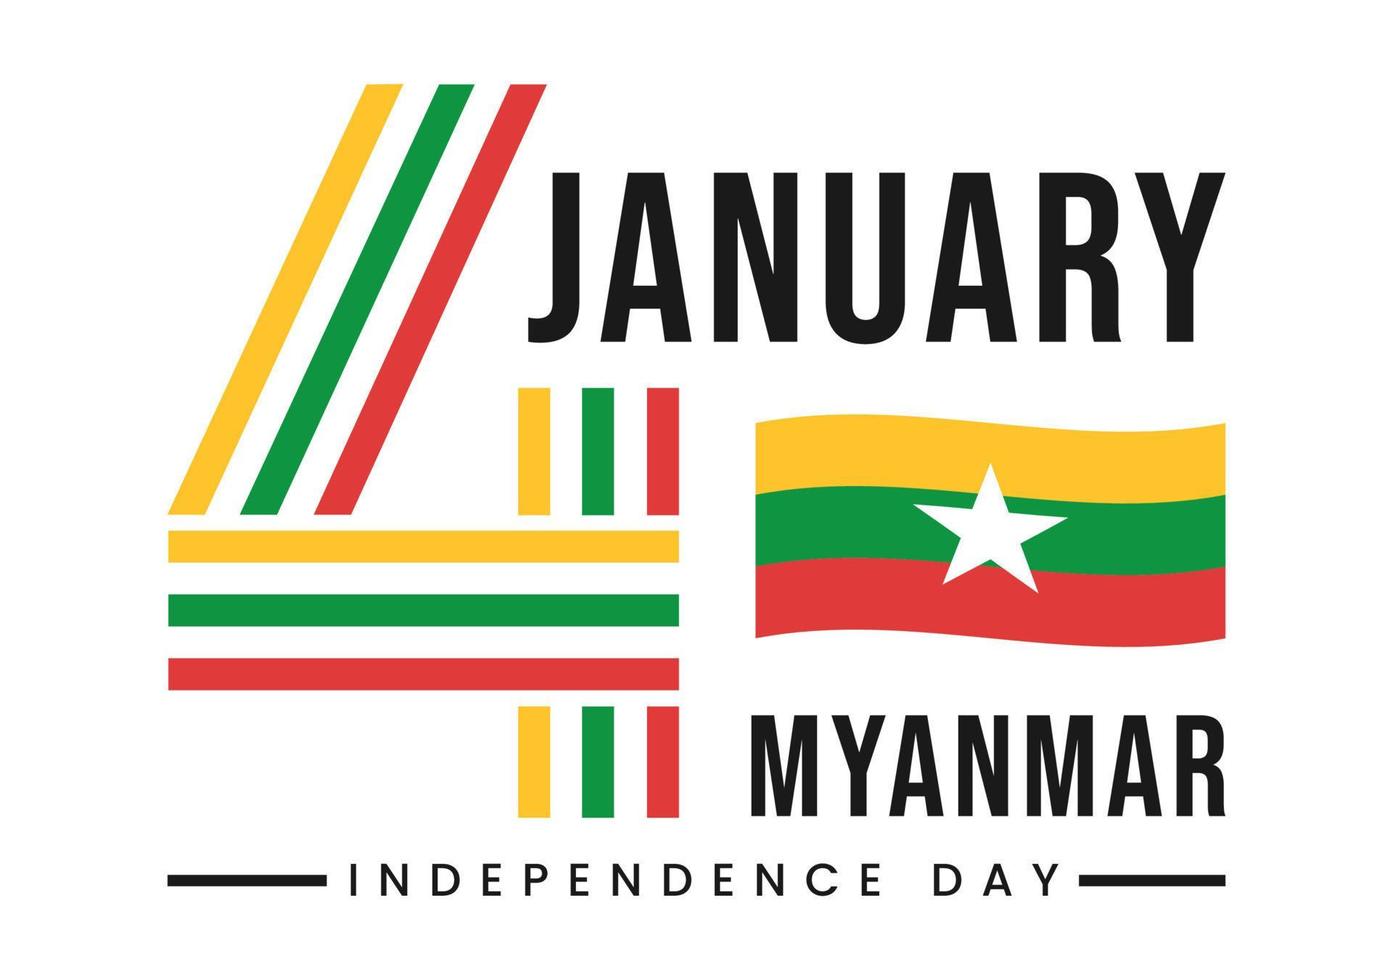 célébrant le jour de l'indépendance du myanmar le 4 janvier avec des drapeaux sur fond de dessin animé plat illustration de modèles dessinés à la main vecteur